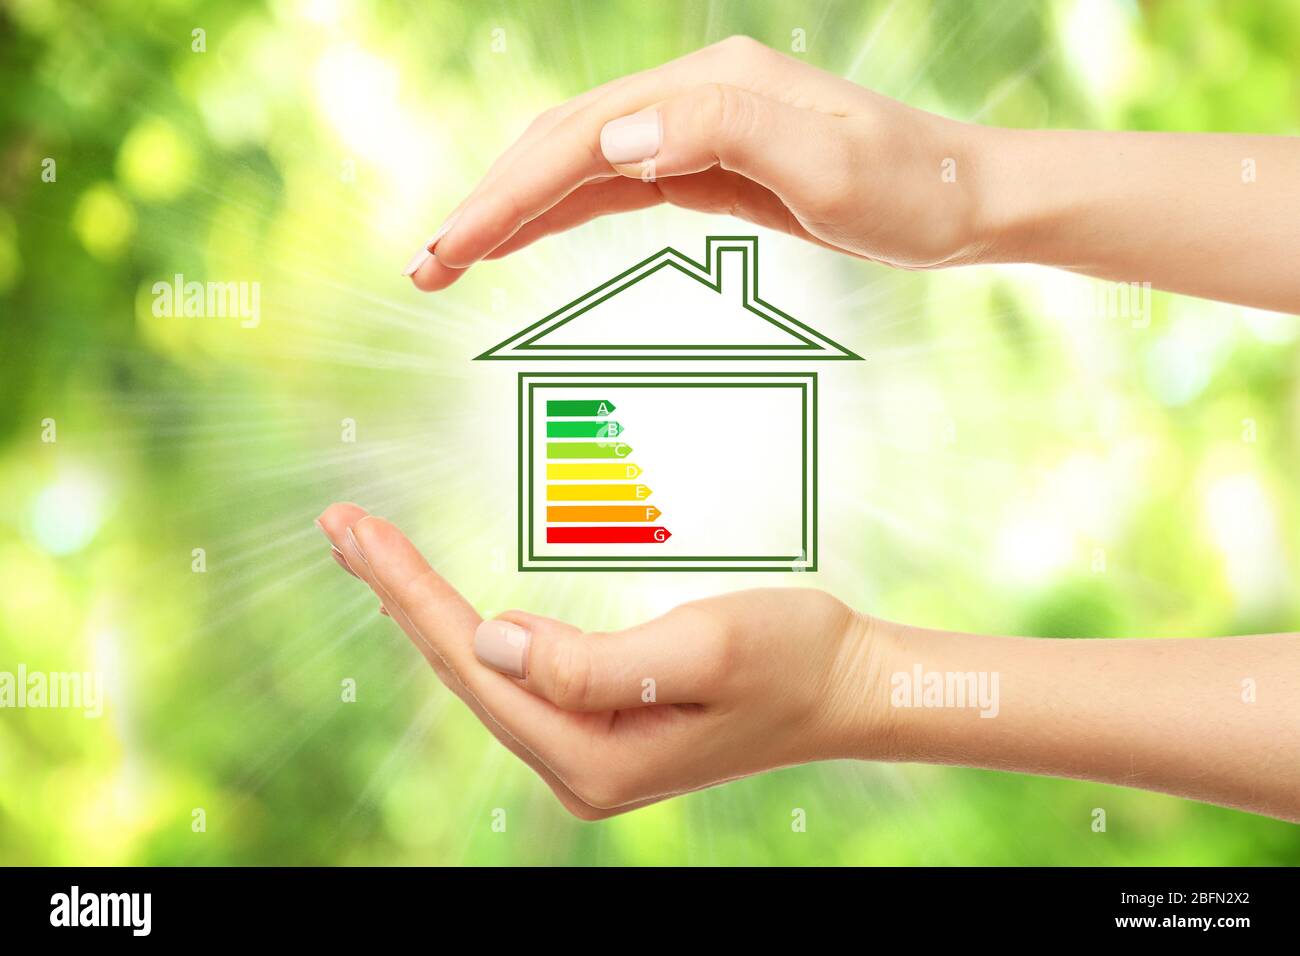 Mains et maison féminines avec l'échelle d'efficacité énergétique sur fond naturel Banque D'Images